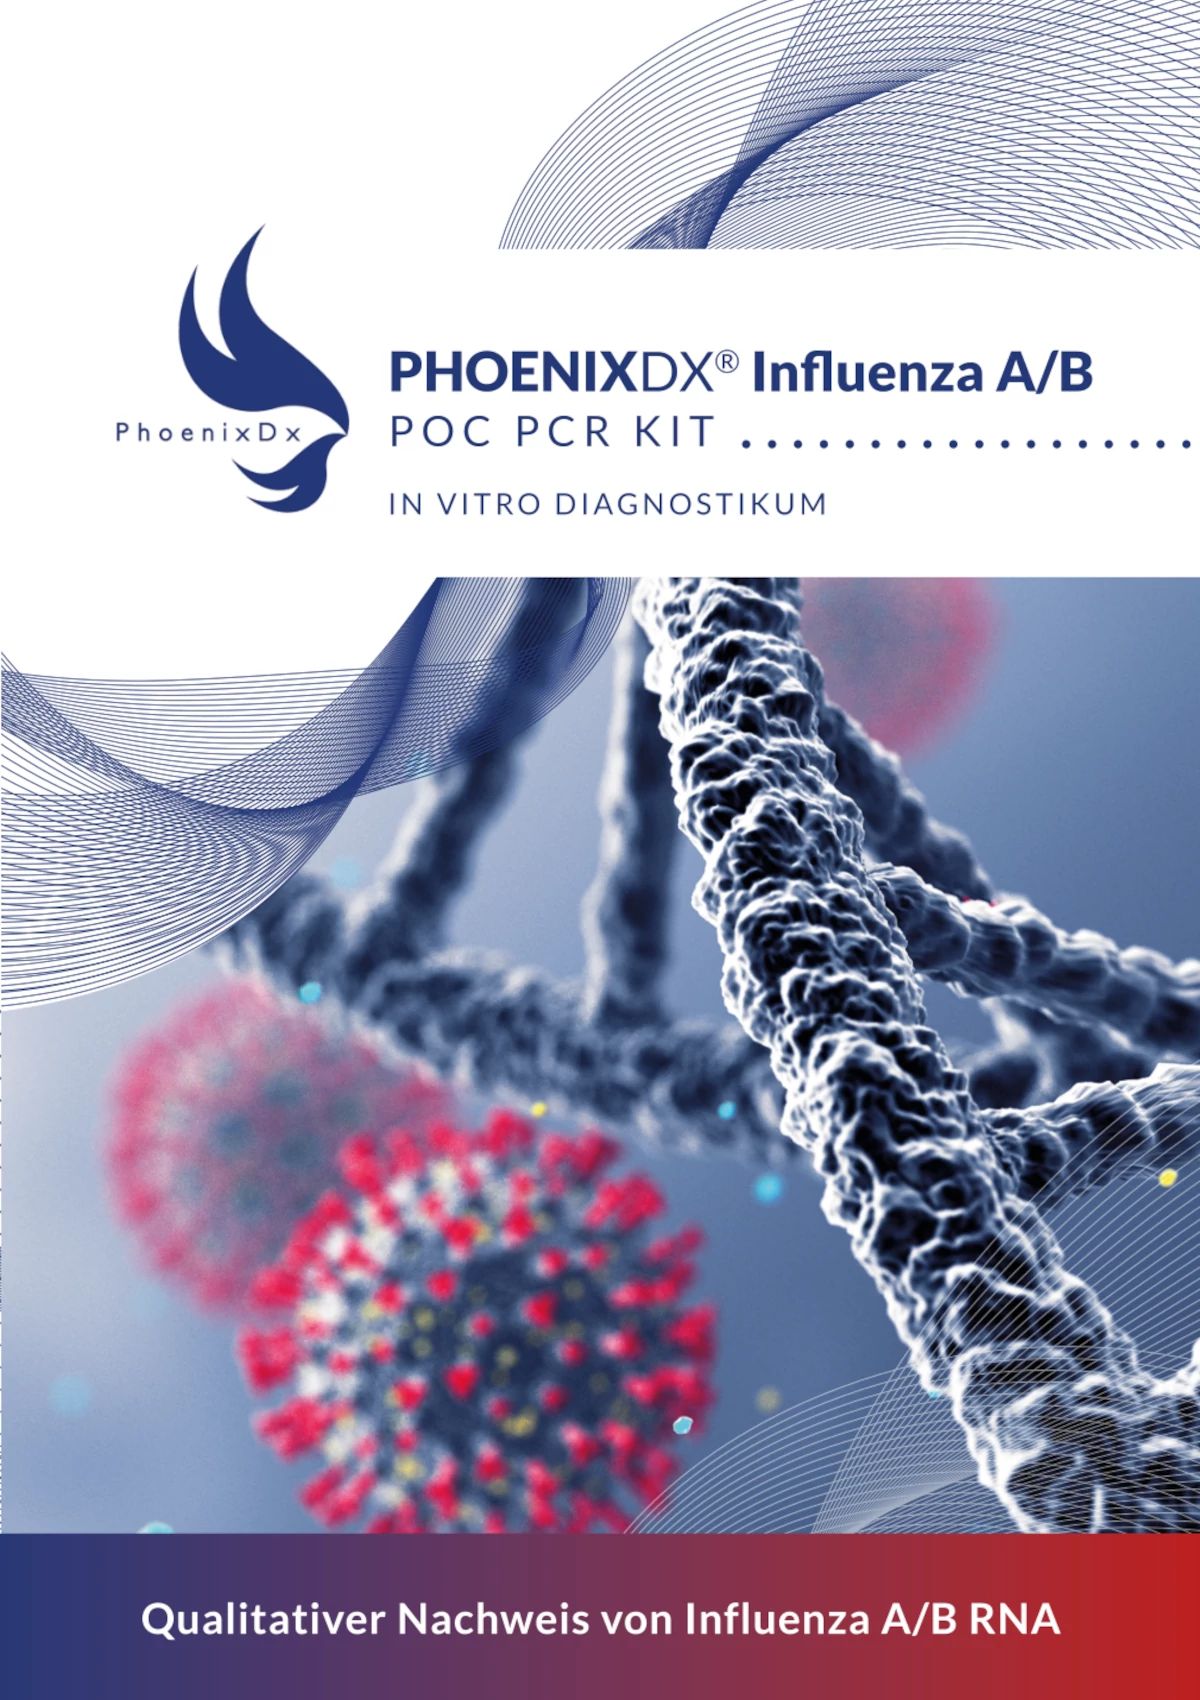 PhoenixDx® Influenza A/B - POC PCR Kit - In Vitro Diagnostikum